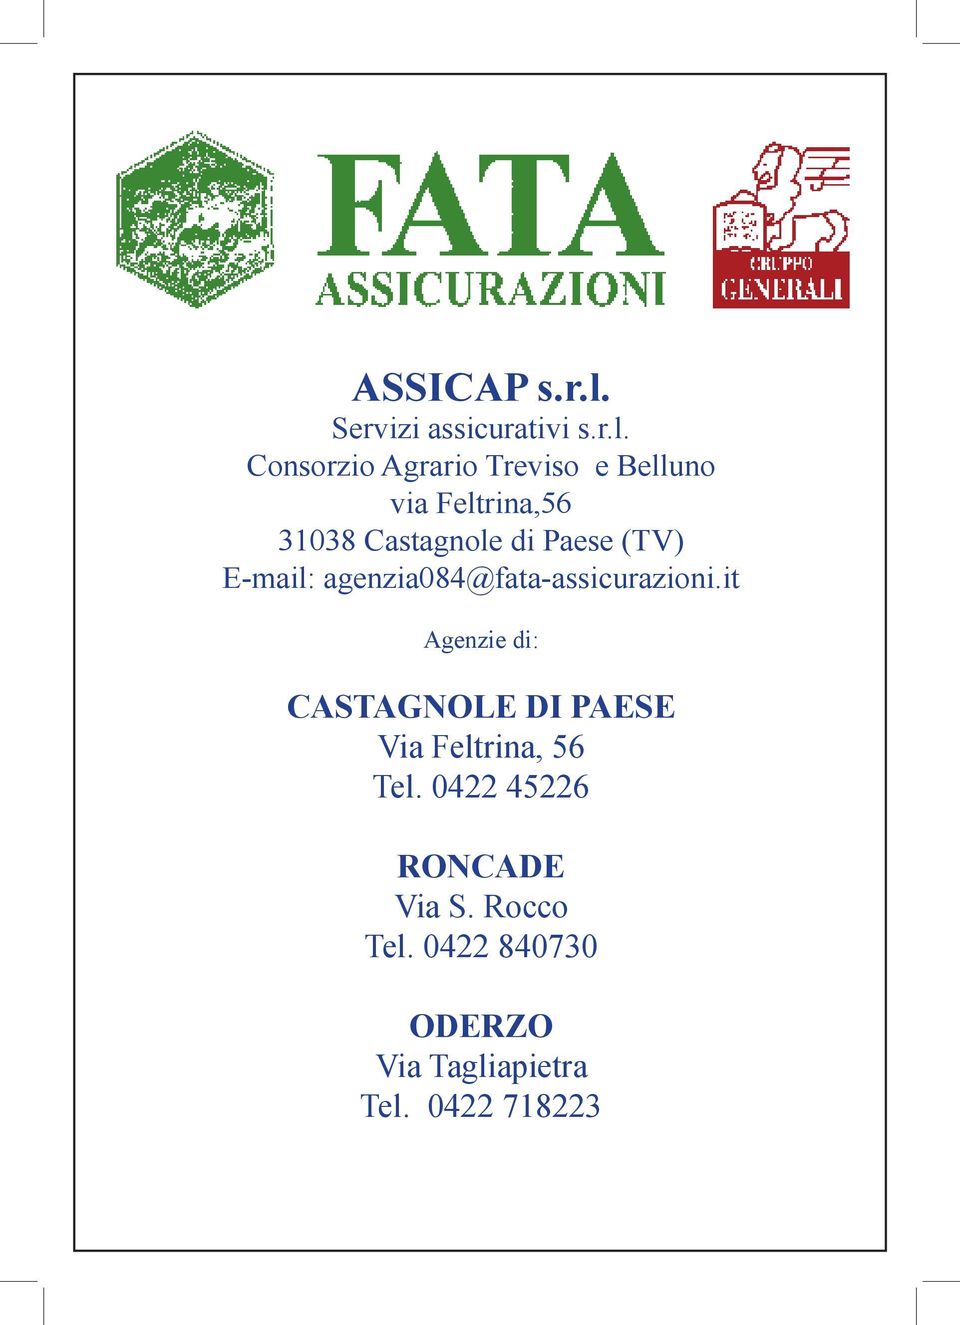 Consorzio Agrario Treviso e Belluno via Feltrina,56 31038 Castagnole di Paese